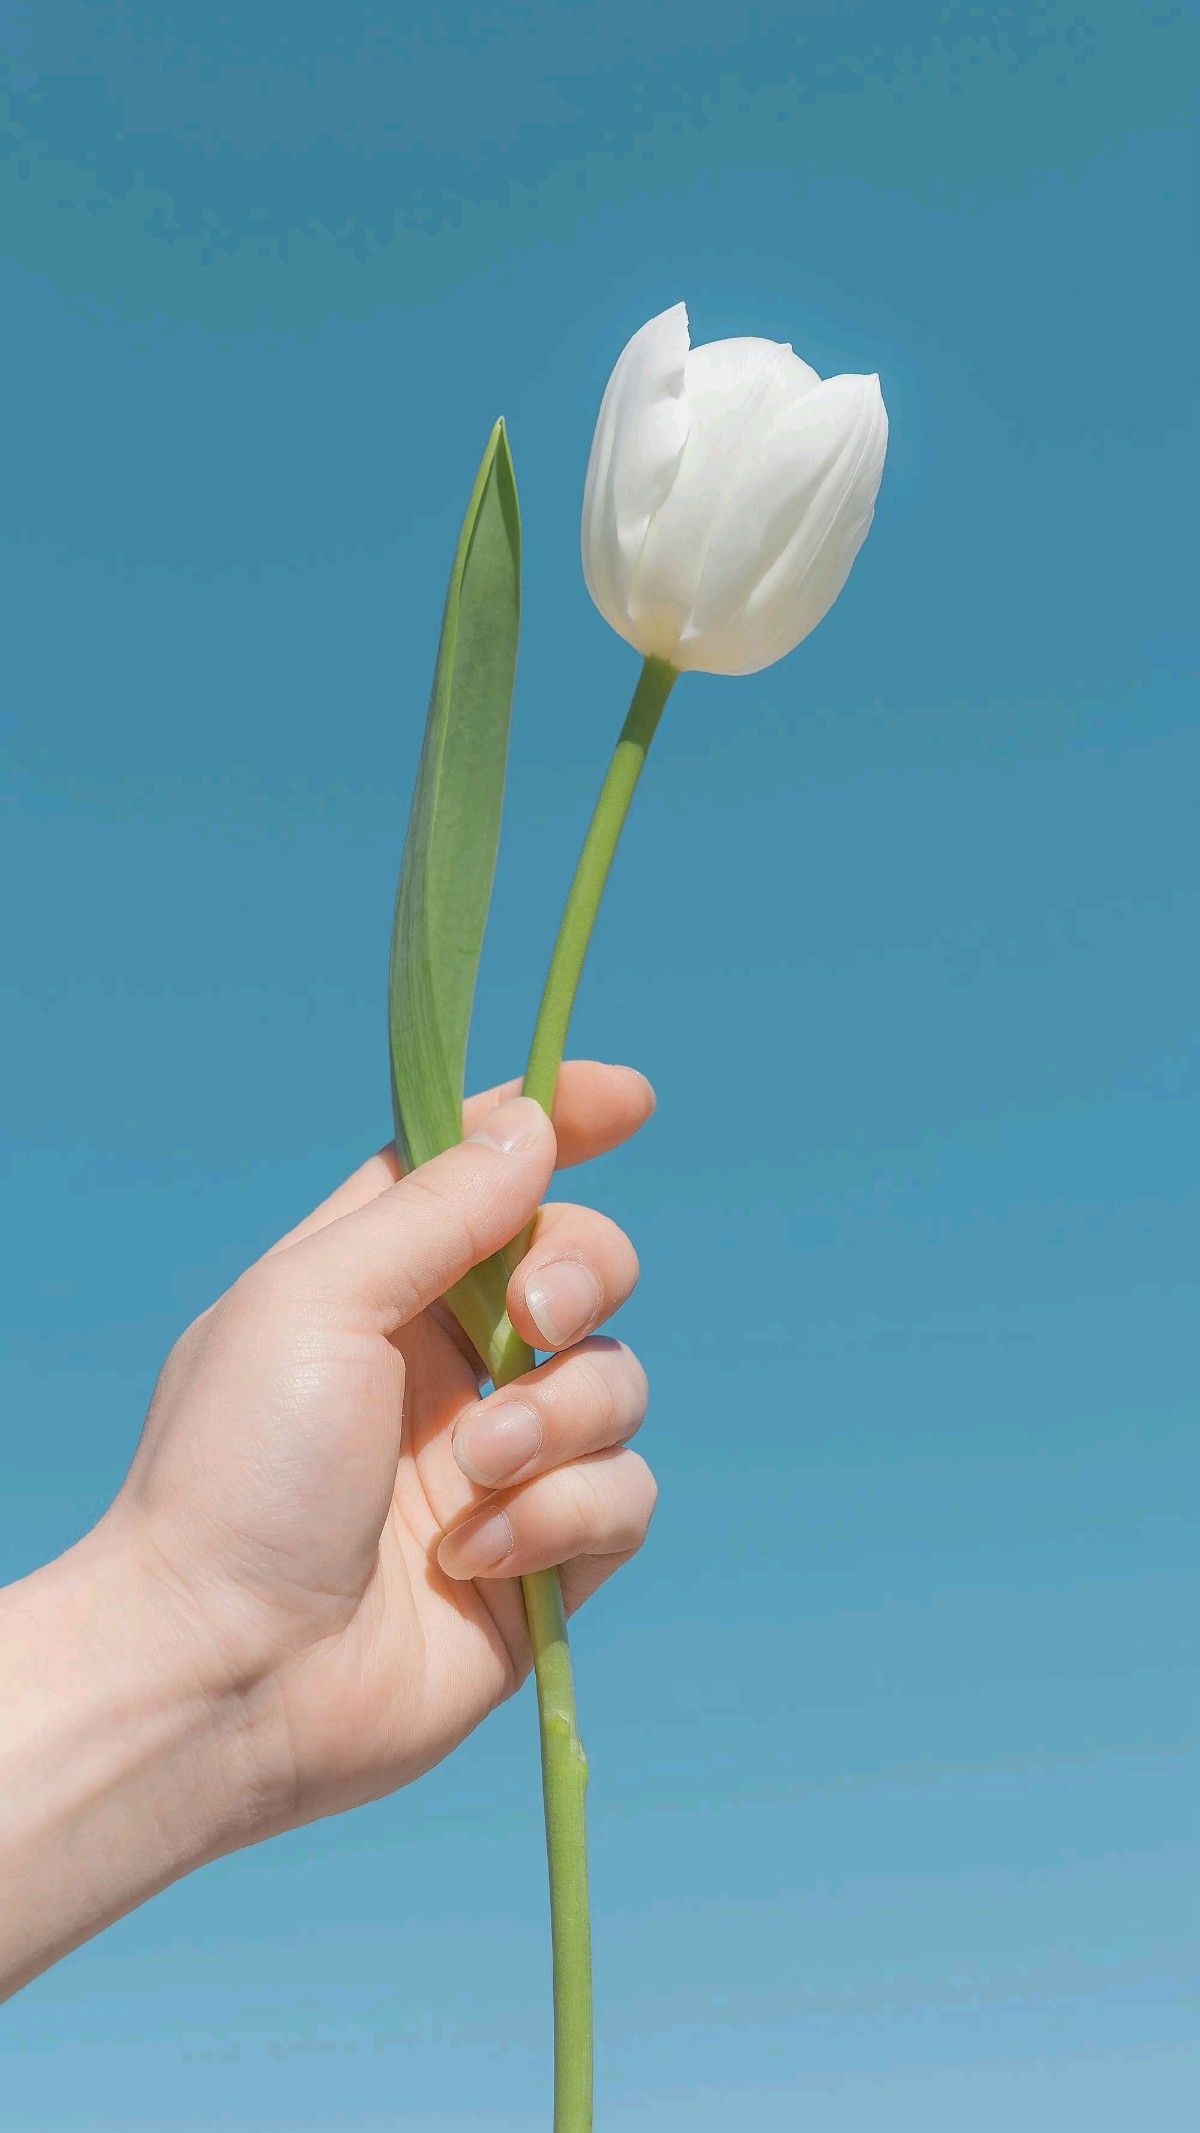 Love me tender là gì? 999+ hình nền hoa tulip trắng để xin vía tình yêu hình nền hoa tulip hình nền hoa tulip chill hoa tulip hình nền hoa tulip trắng hoa tulip trắng love me tender Love me tender Love me tender là gì